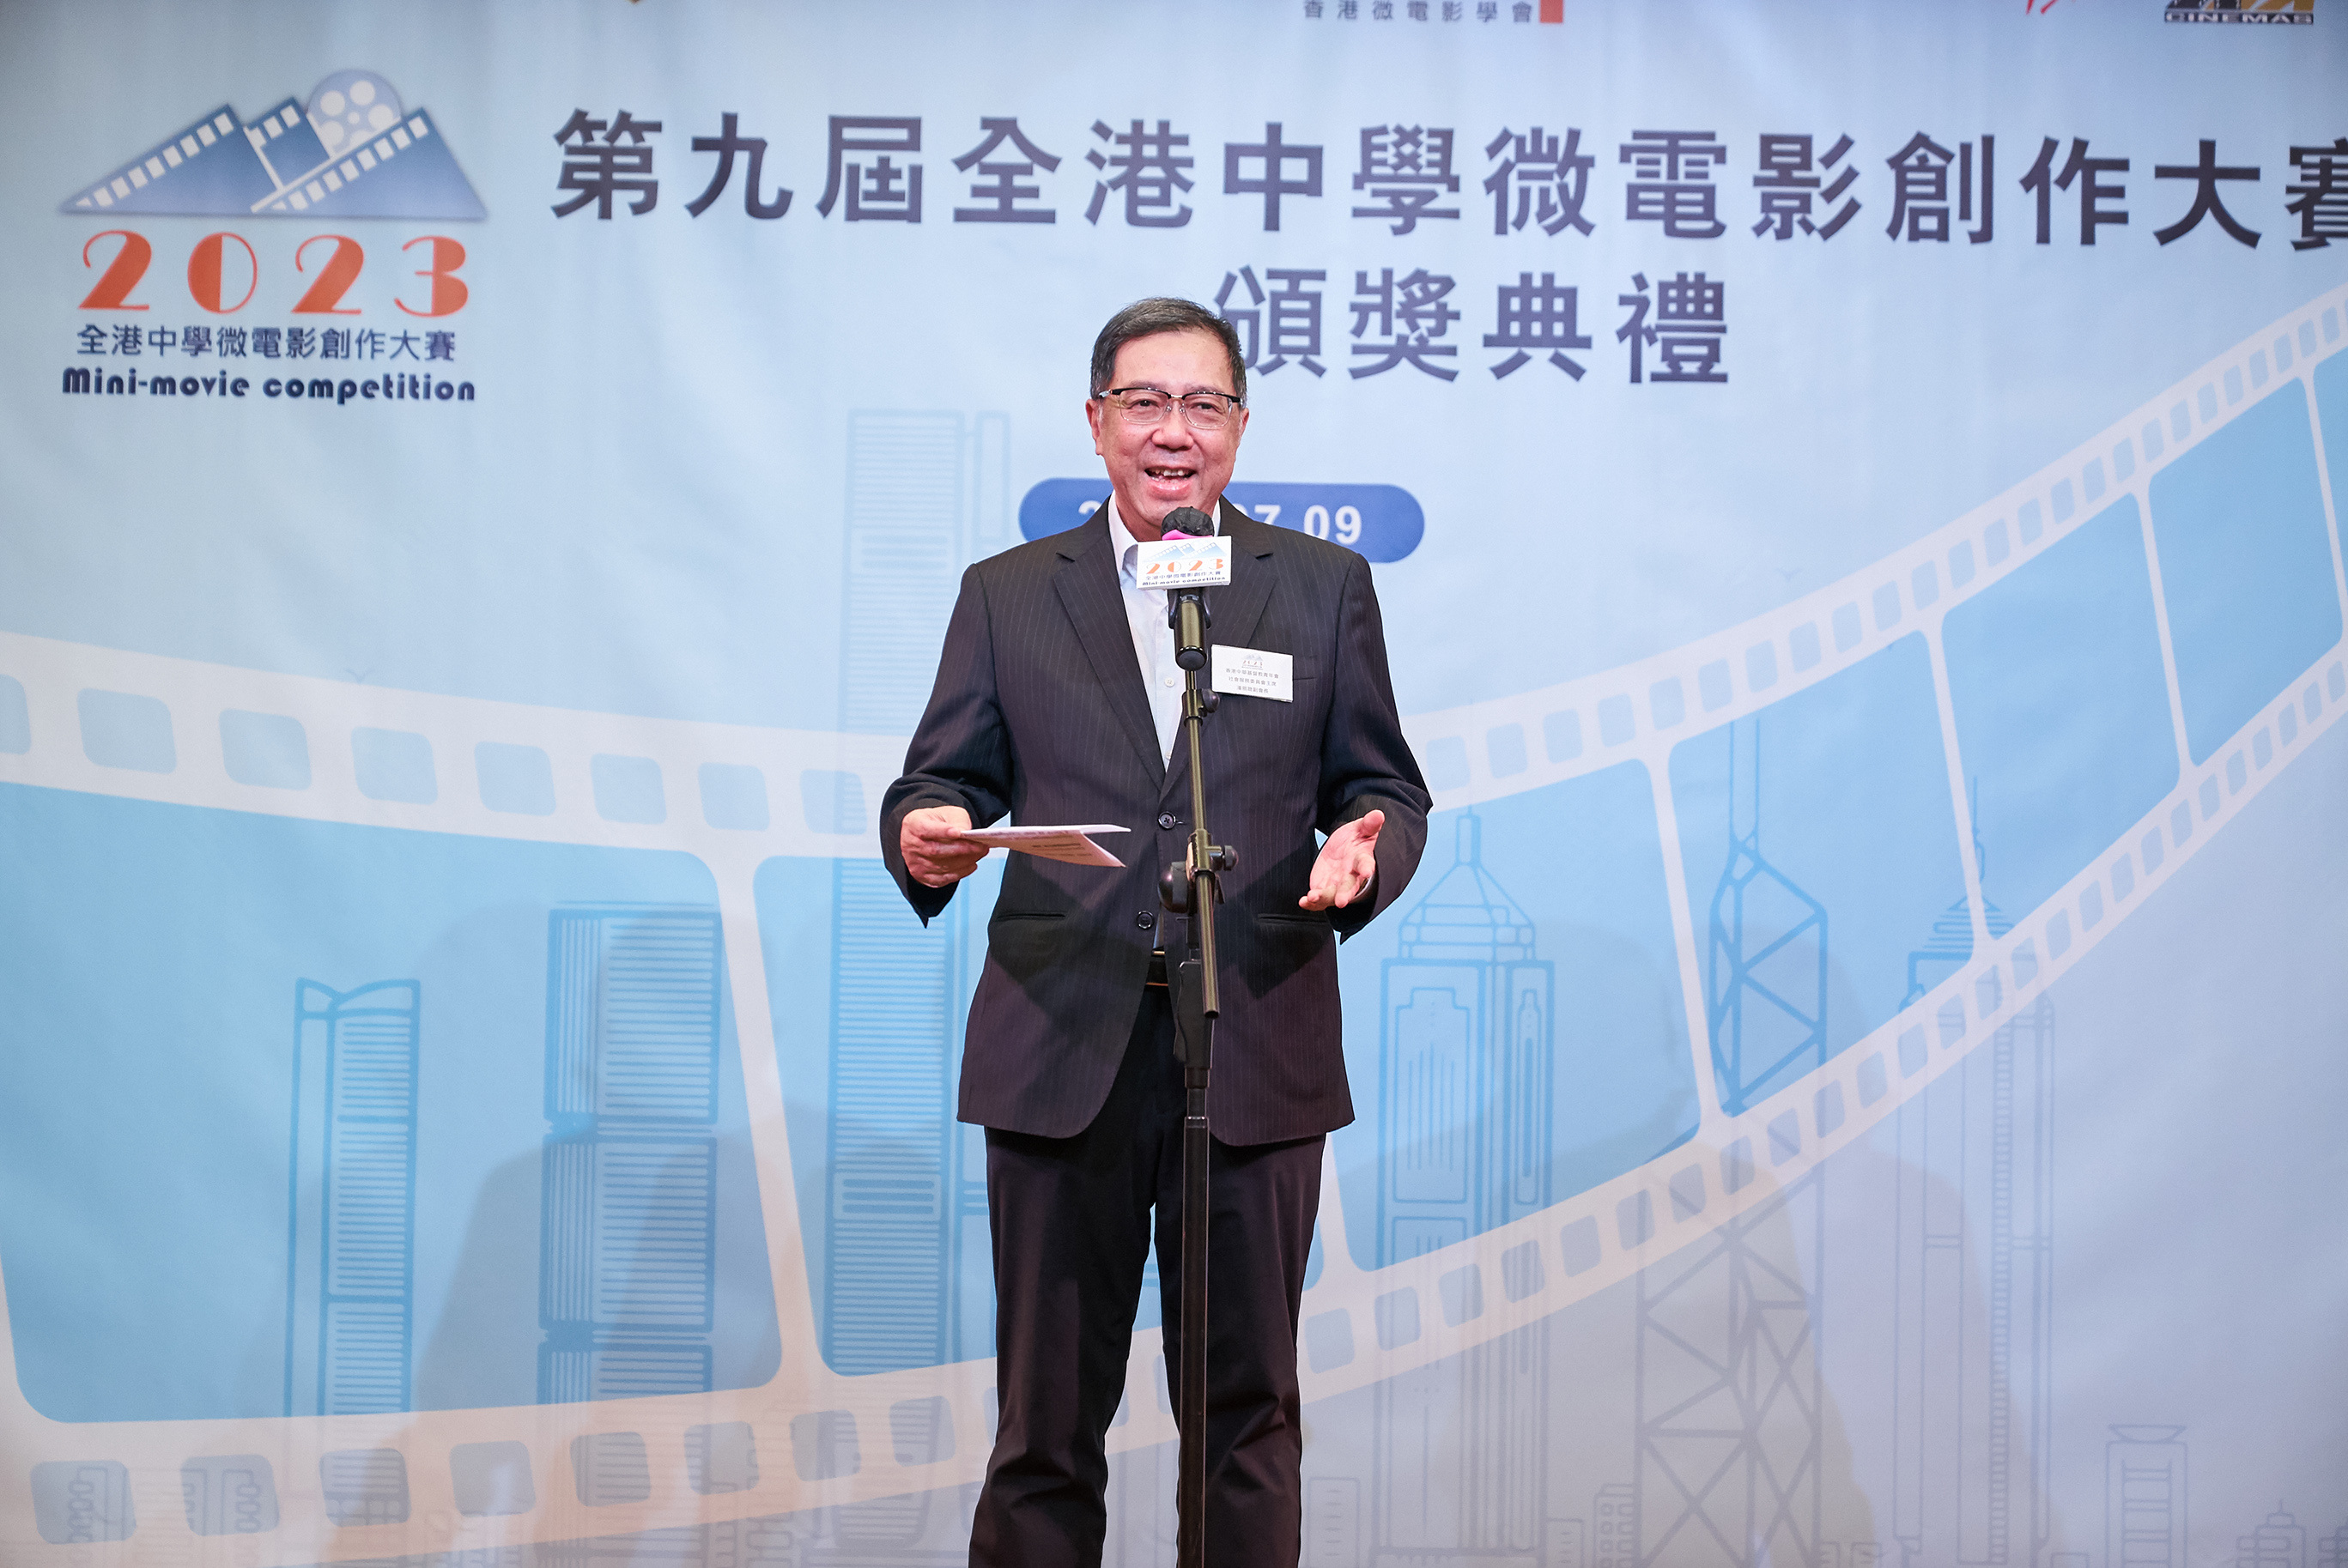 香港中華基督教青年會社會服務委員會主席潘展聰副會長為頒獎典禮致歡迎辭